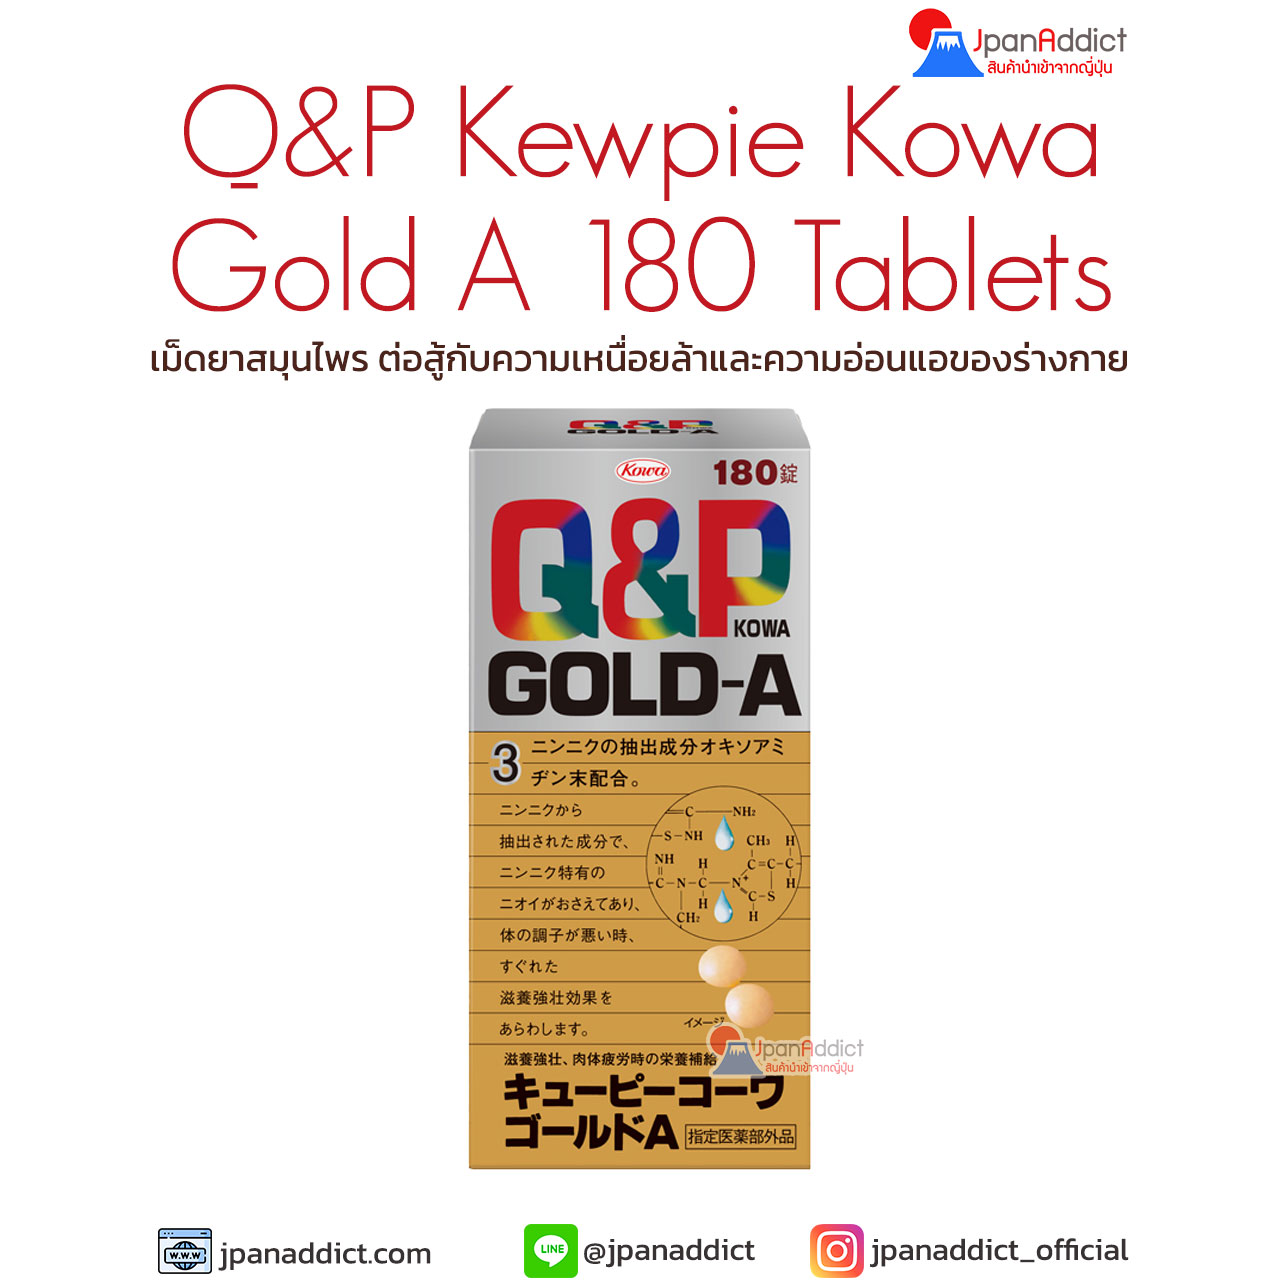 Q&P Kewpie Kowa Gold A 180 Tablets